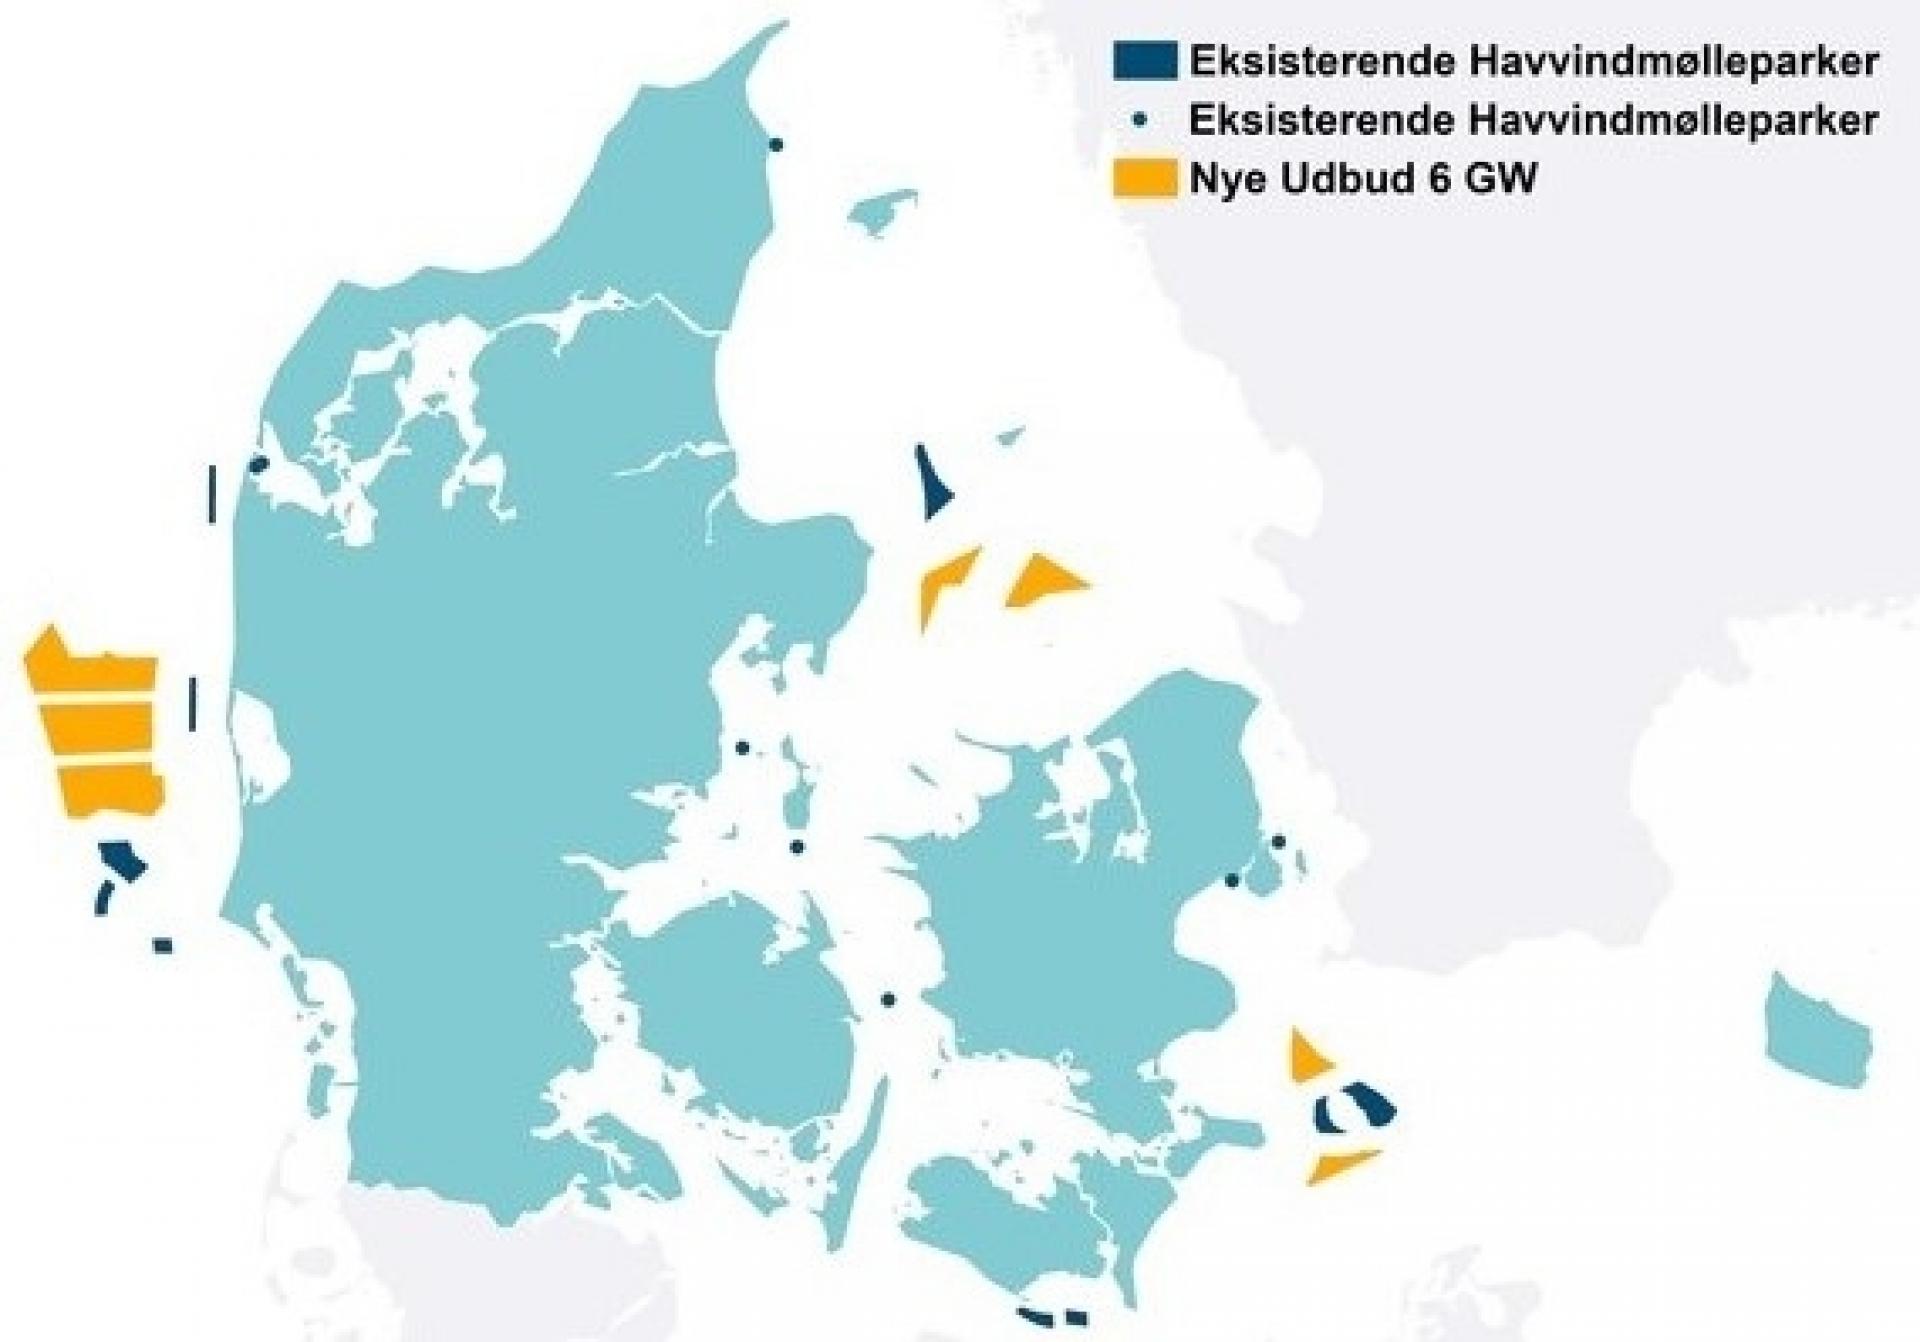 Kort over de udbudte parker samt eksisterende havvindmølleparker i Danmark Energistyrelsen.